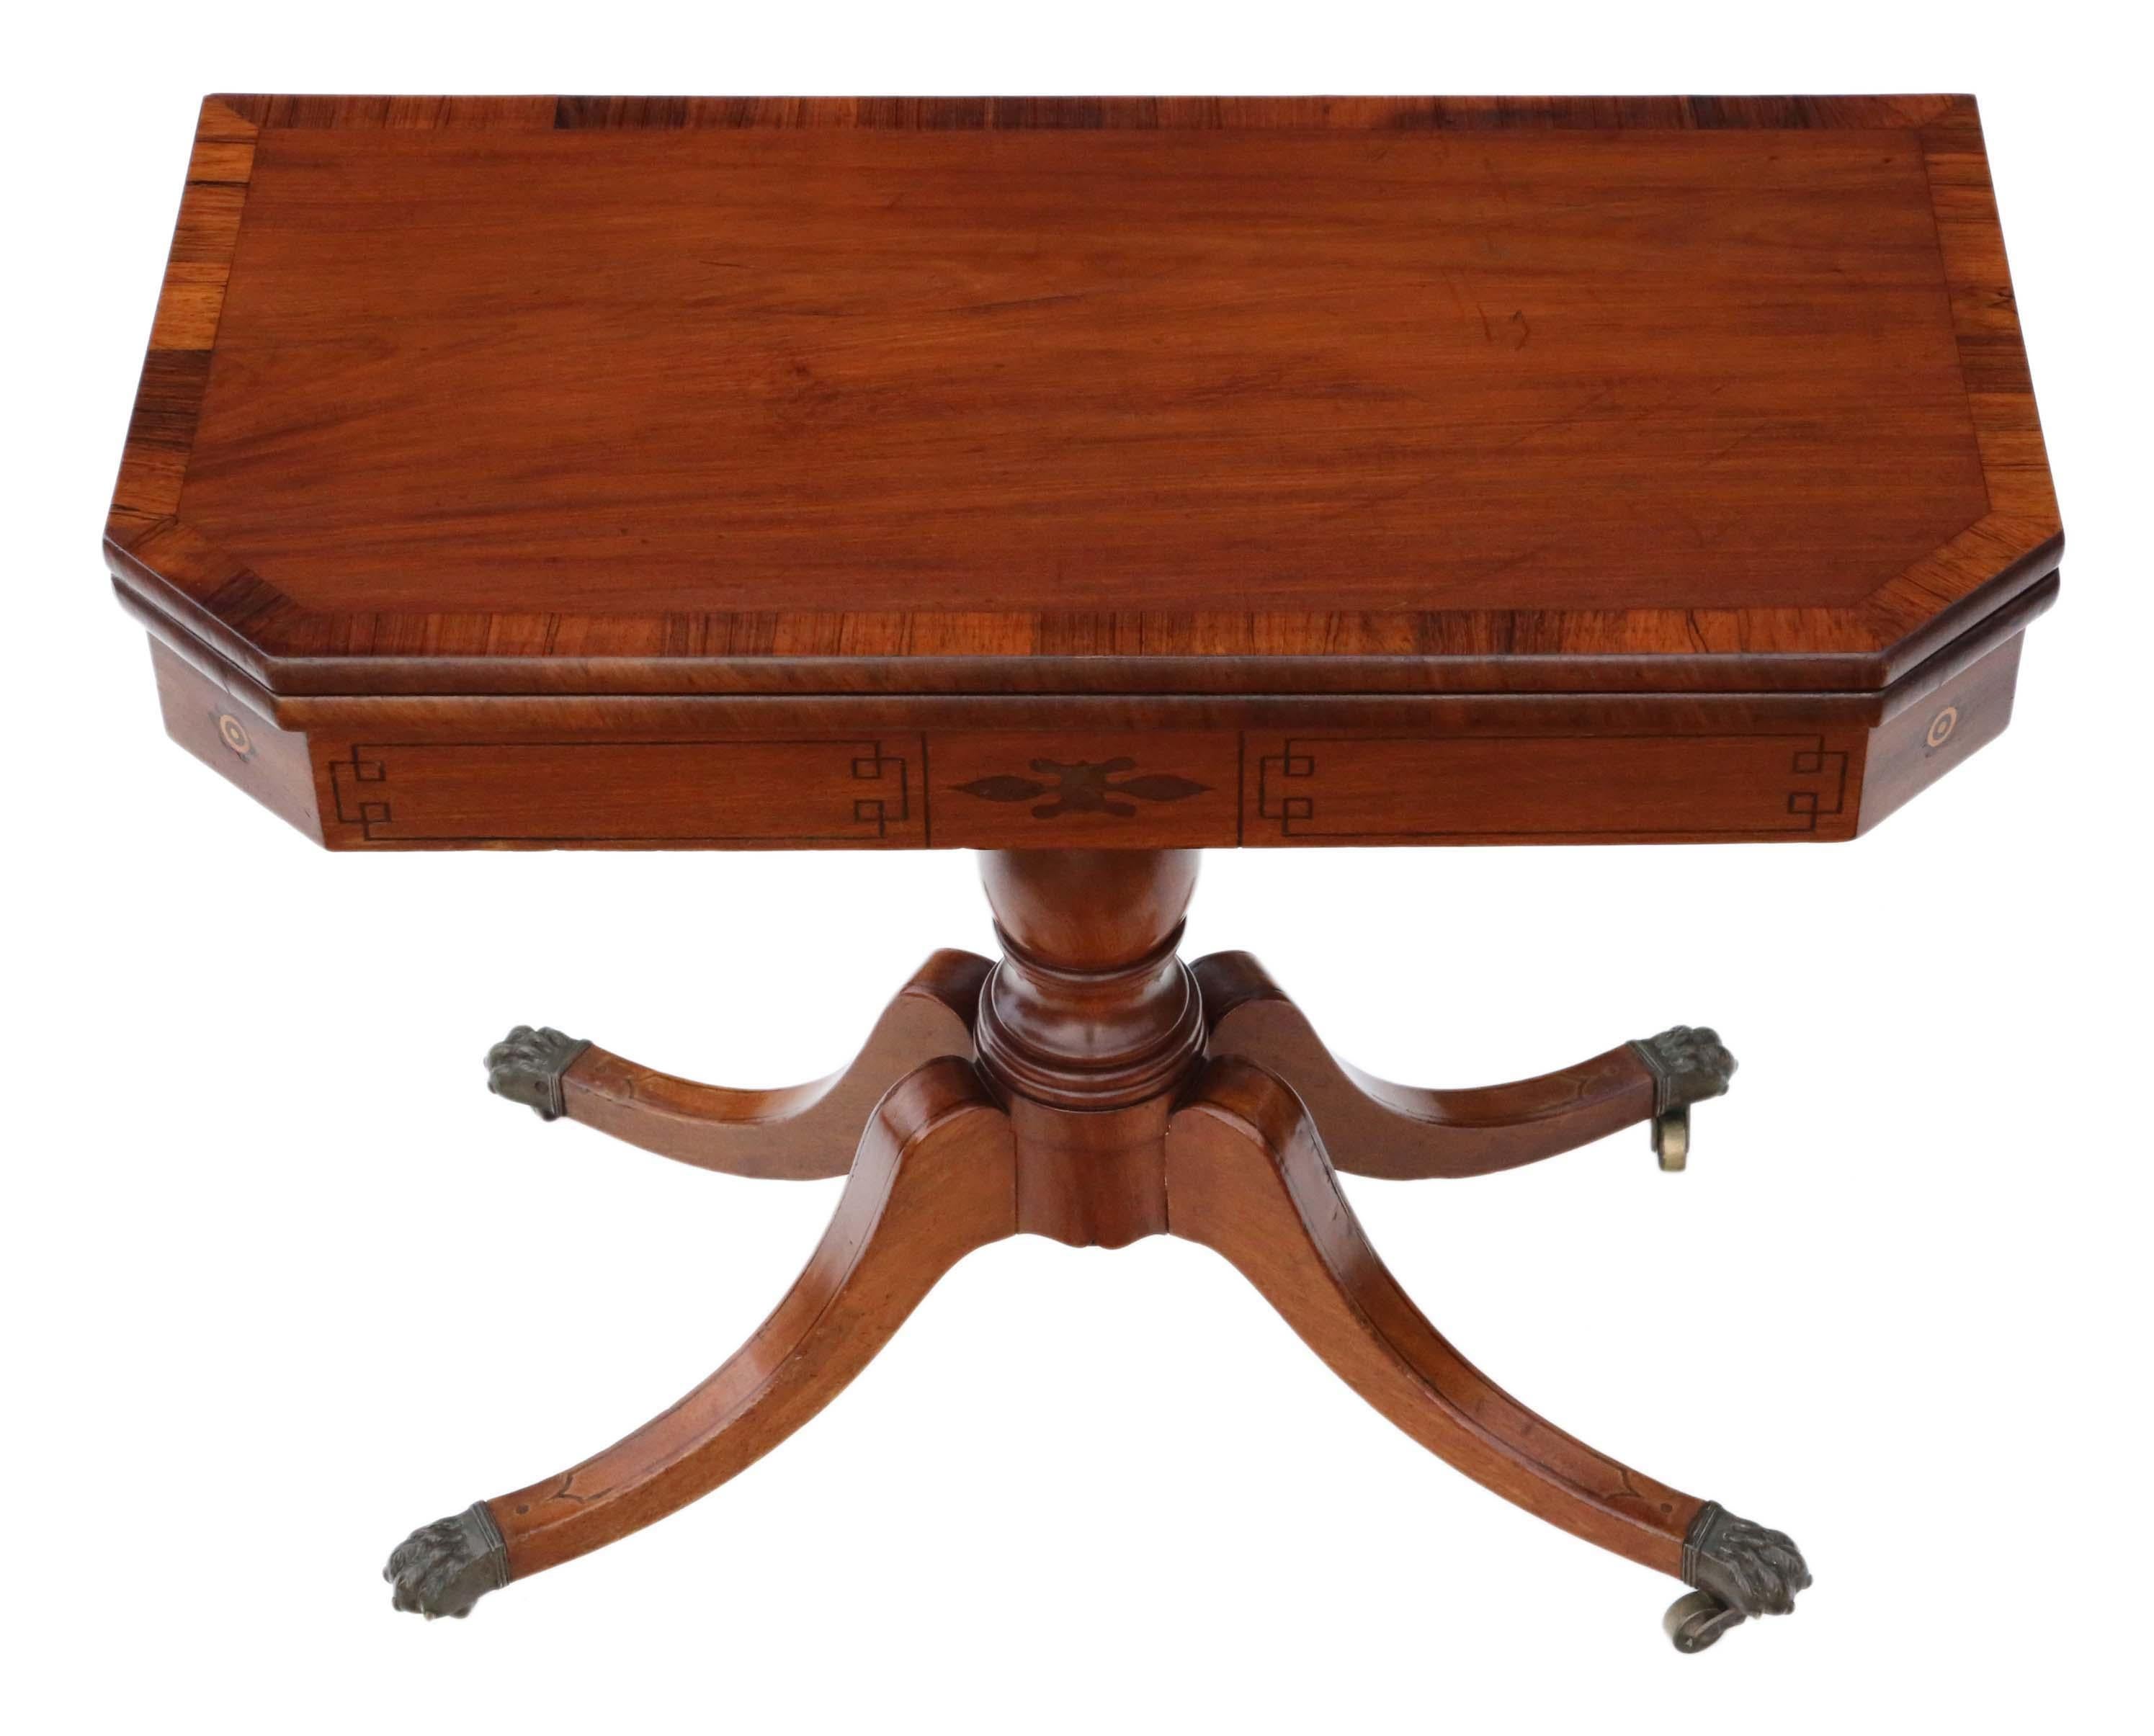 Table à thé pliante en acajou de l'époque géorgienne vers 1810, qui ferait également une charmante table à cartes ou console.

C'est une belle table, pleine d'âge, de charme et de caractère. Il repose sur de jolies roulettes en laiton.

Pas de